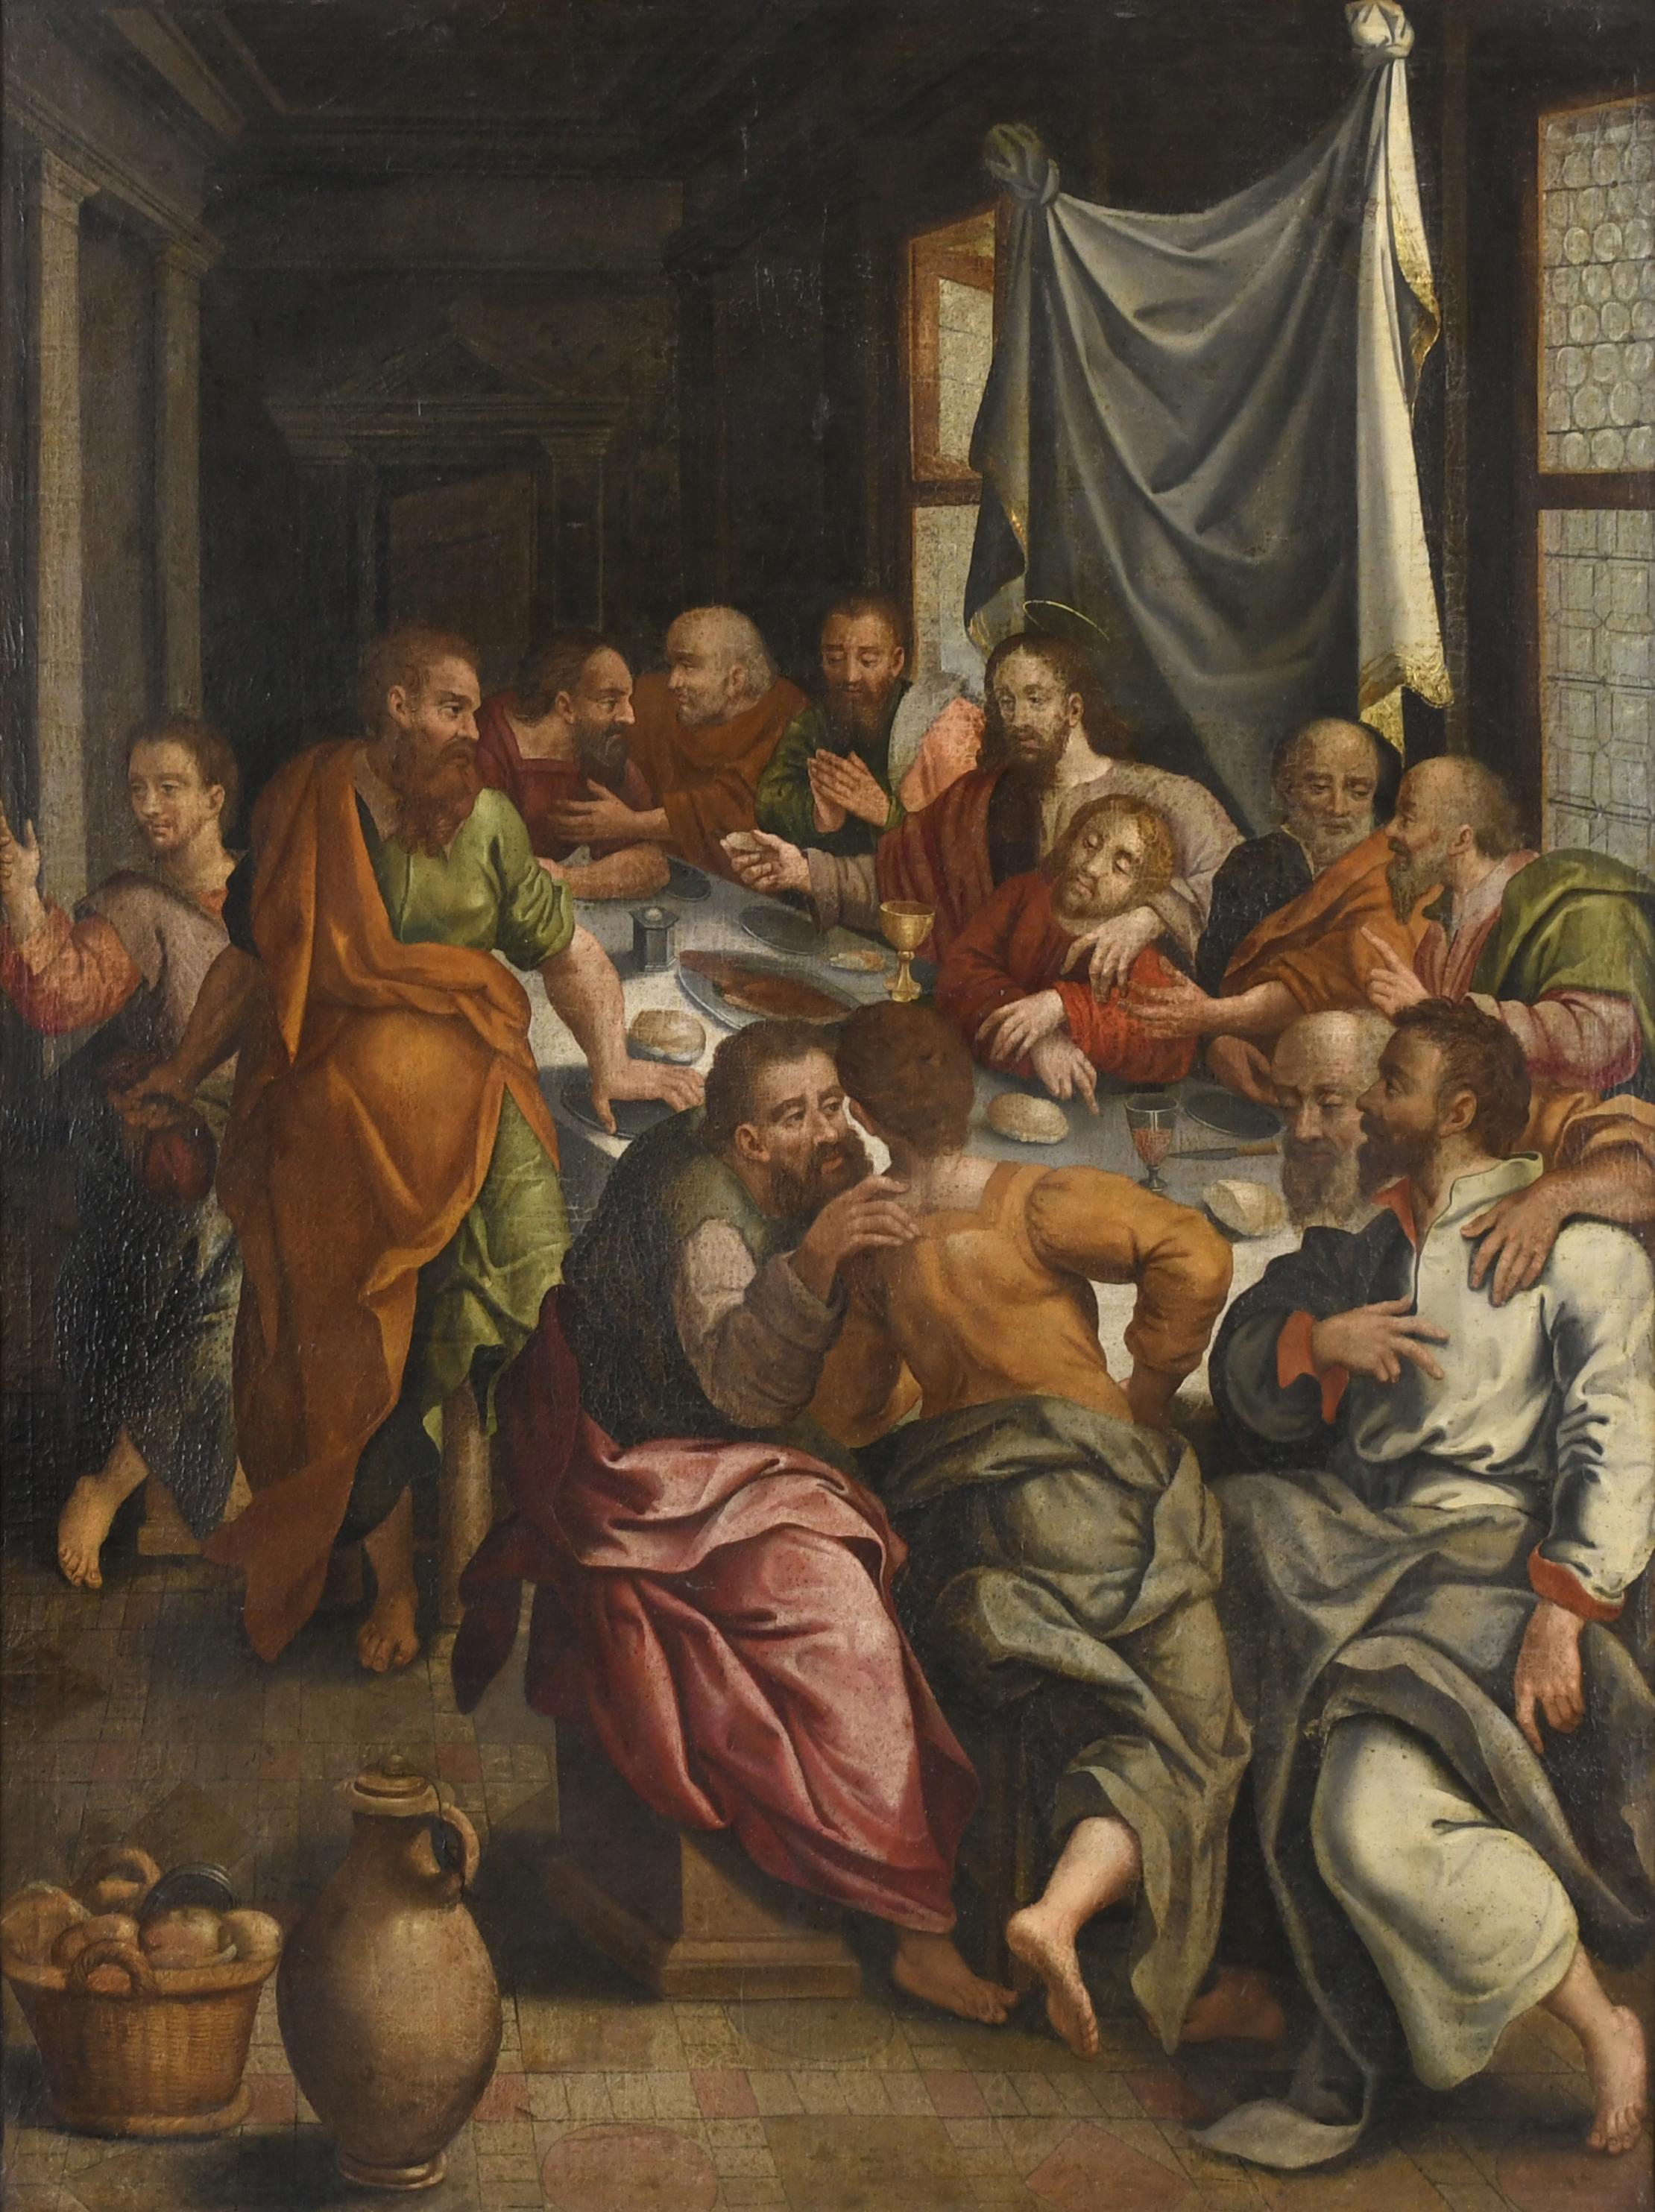 ATTRIBUTED TO PABLO DE CÉSPEDES (1538-1608). "LAST DINNER".